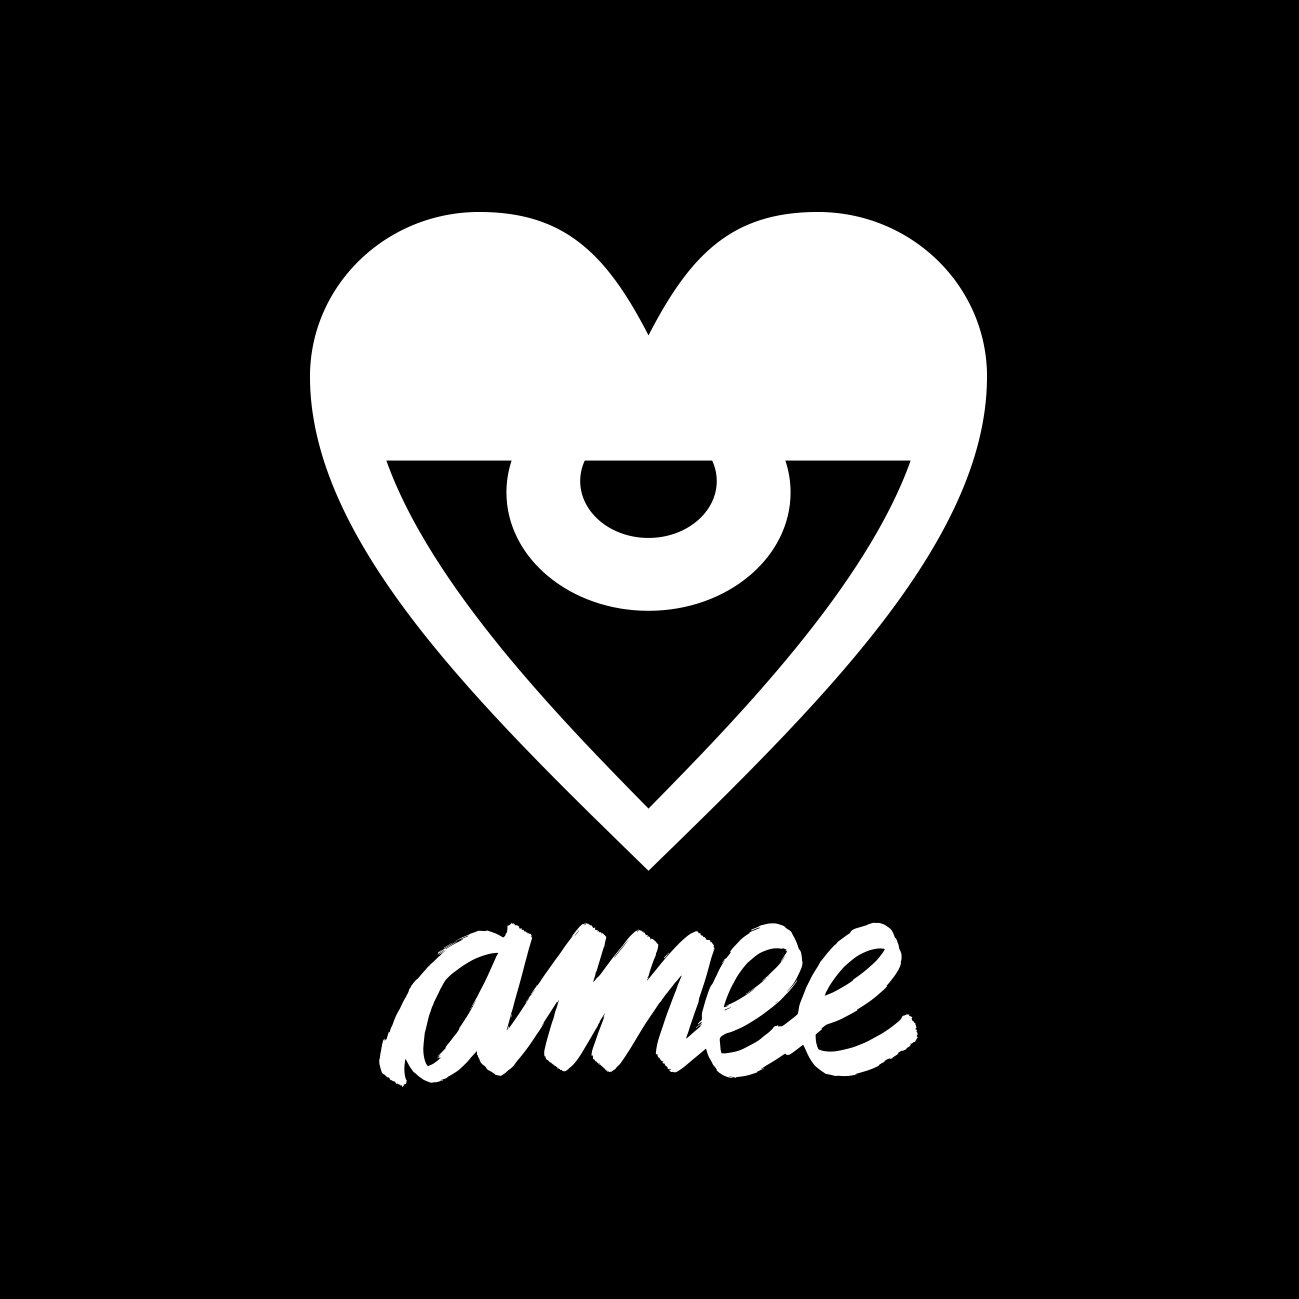  Logo da Amee Skate Arte. Coração com o olho